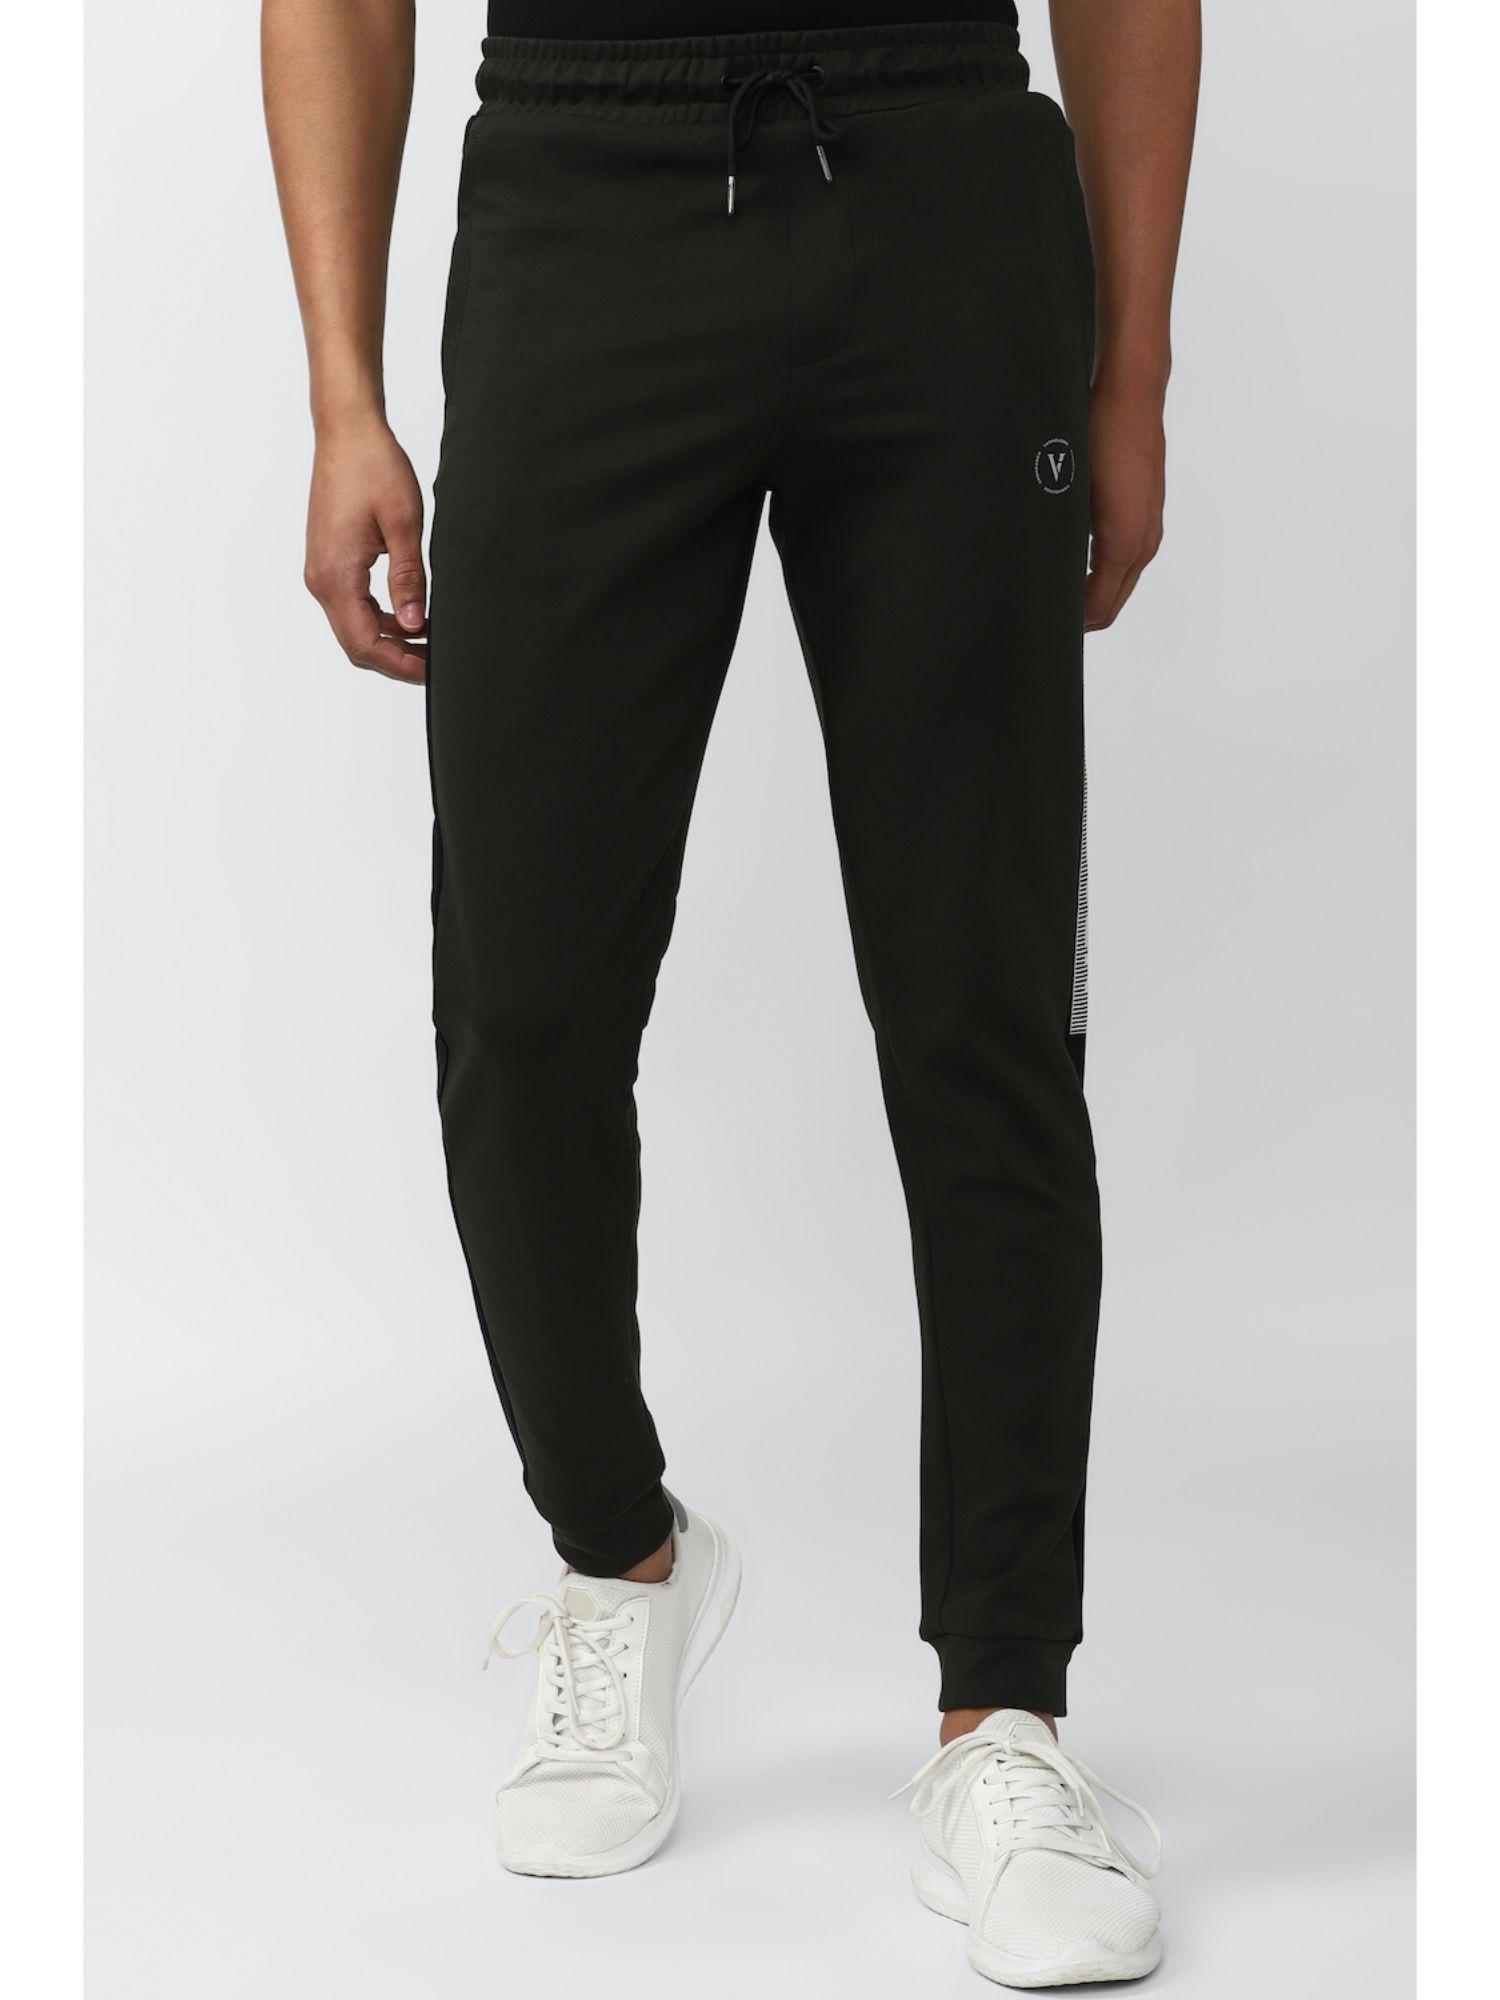 men black print casual jogger pants